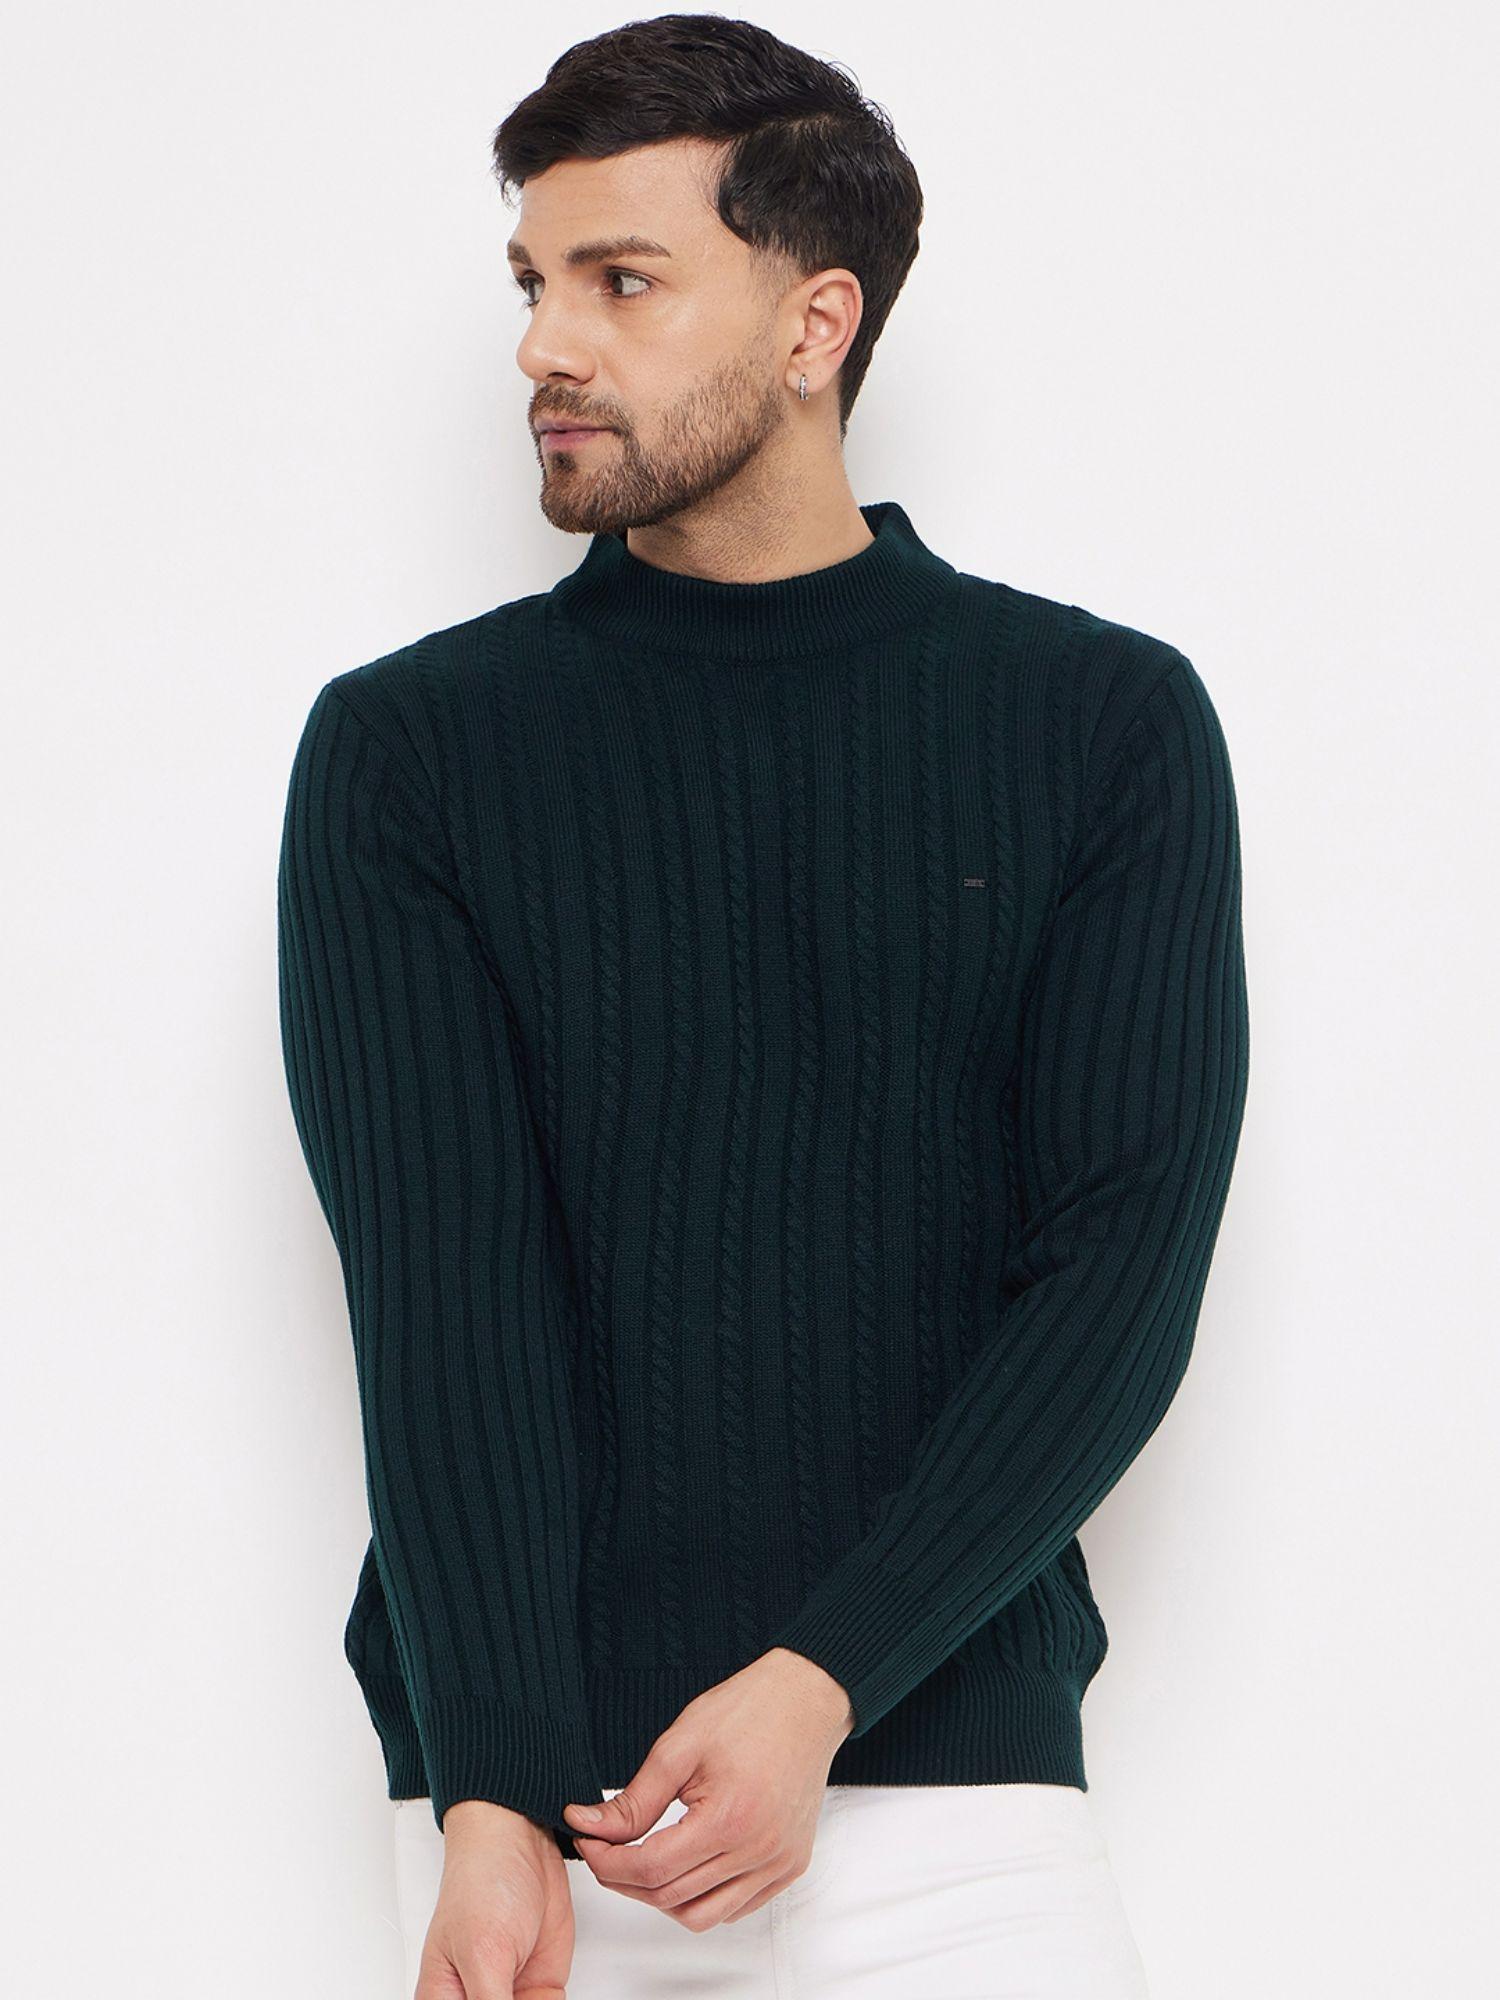 green-acrylic-sweater